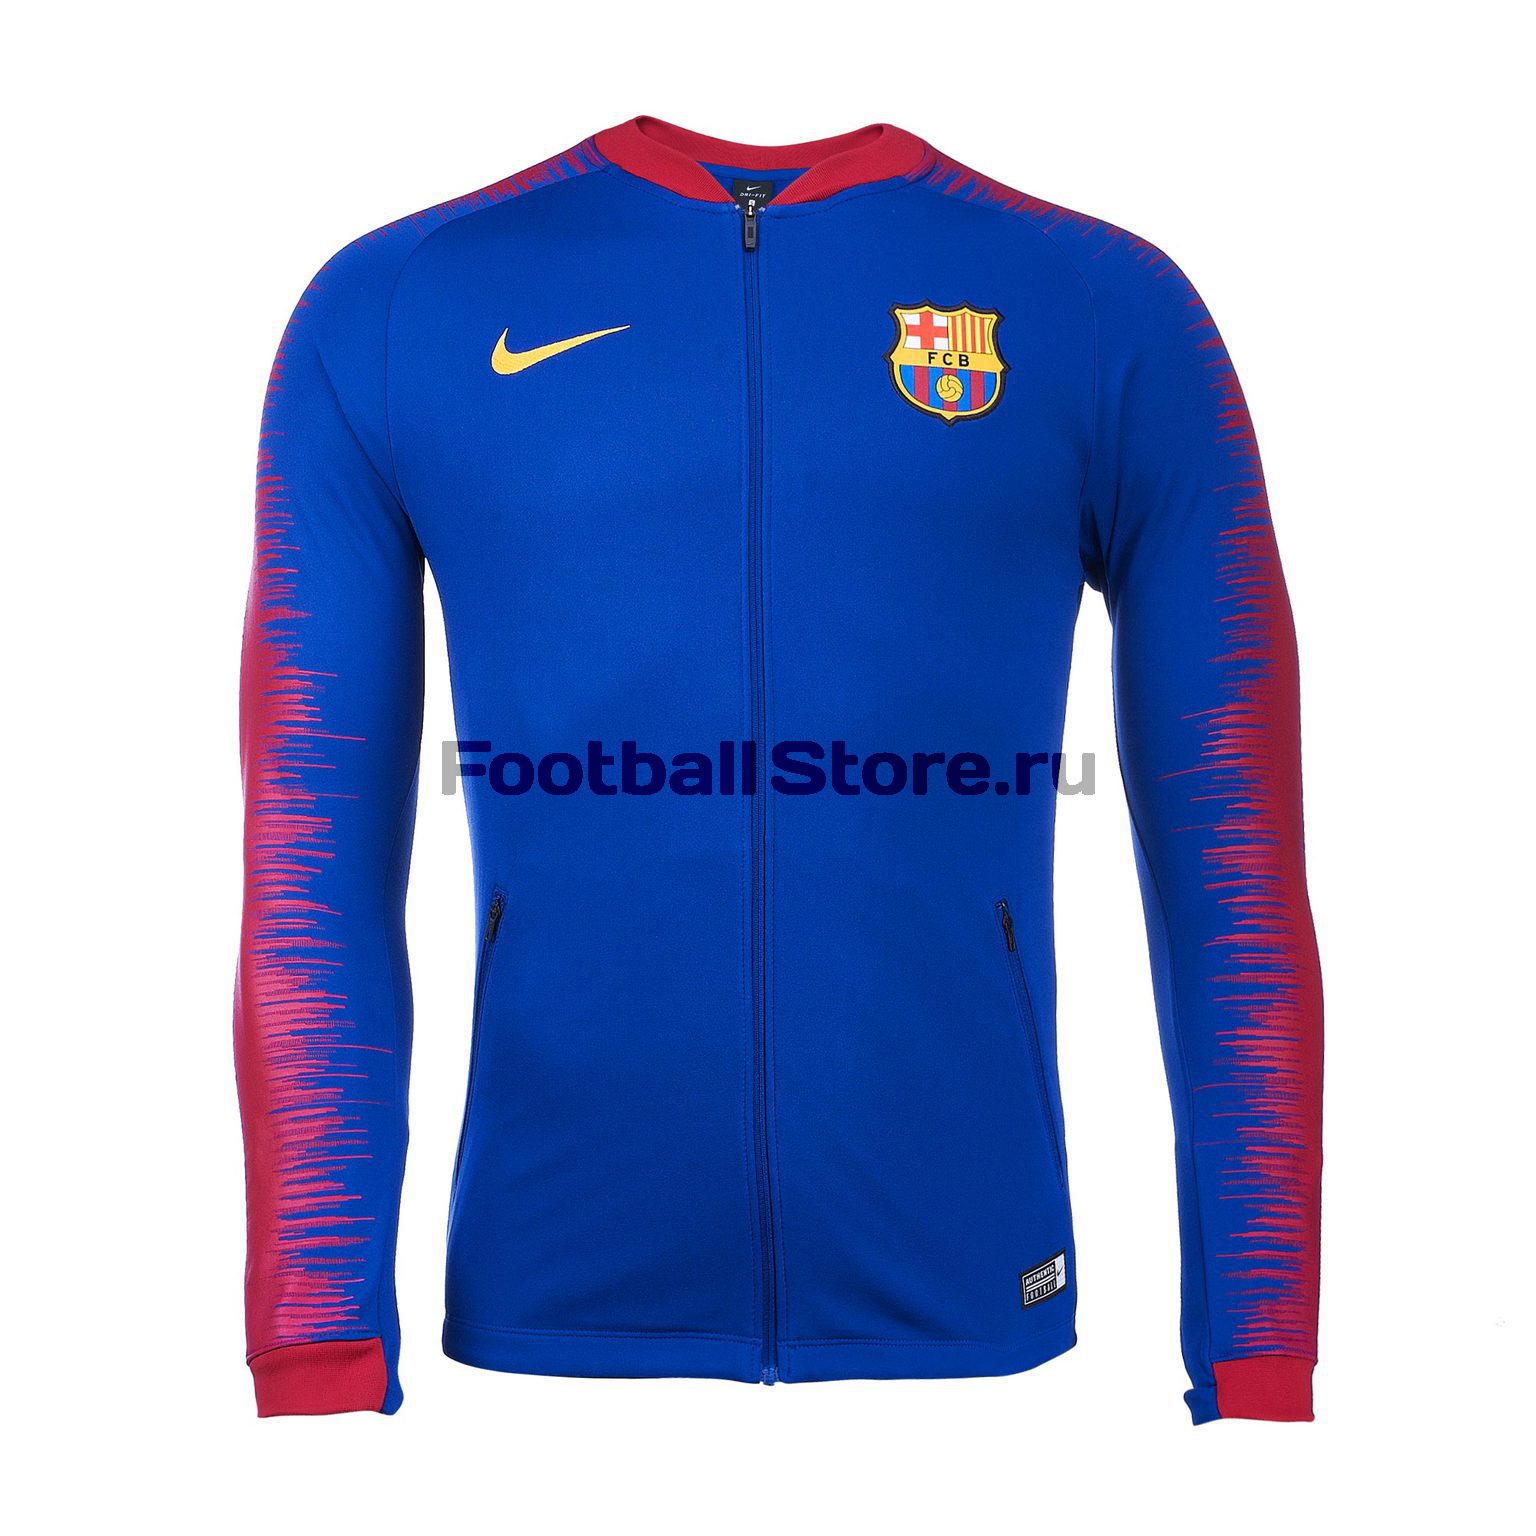 Олимпийка Nike FC Barcelona JKT 894361-456 